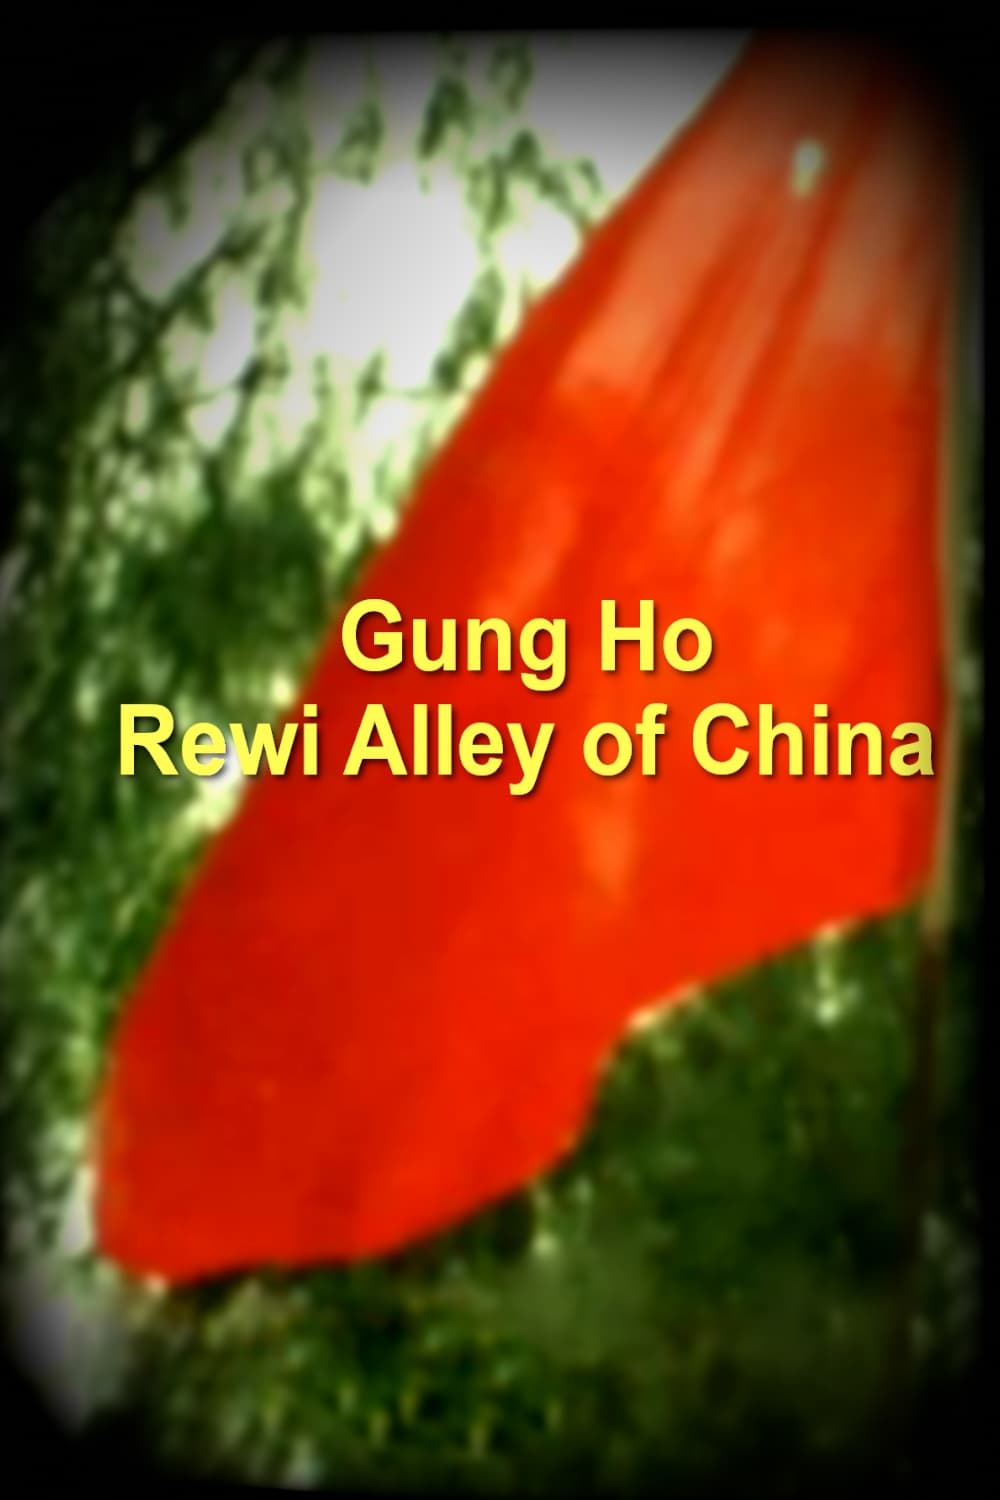 Gung Ho - Rewi Alley of China